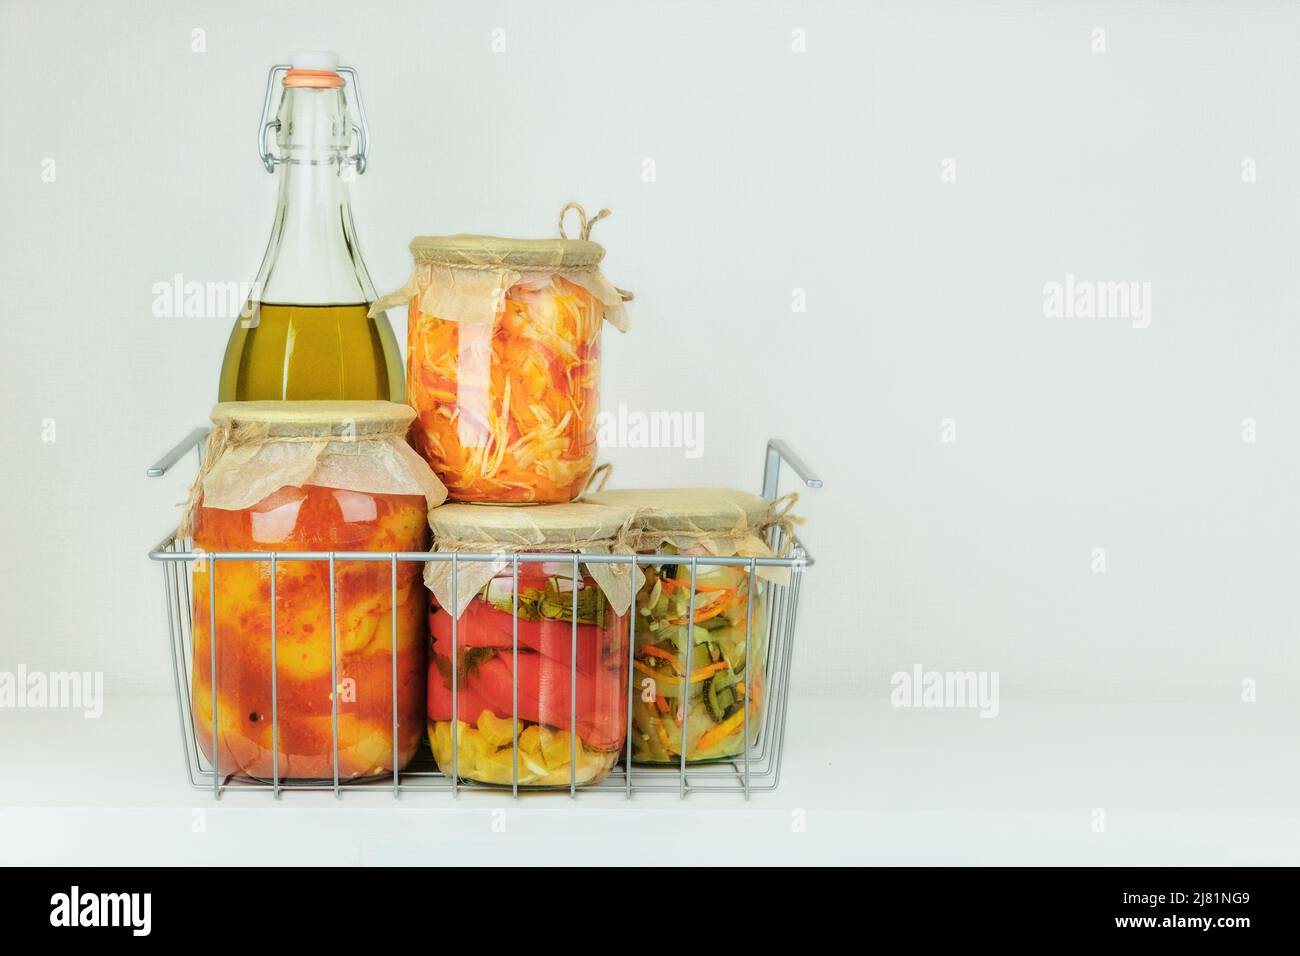 Vasetti di vetro di varietà di verdure sott'aceto o fermentate fatte in casa. Concetto di cibo fermentato. Alimenti probiotici in cibi dietetici equilibrati. Foto Stock